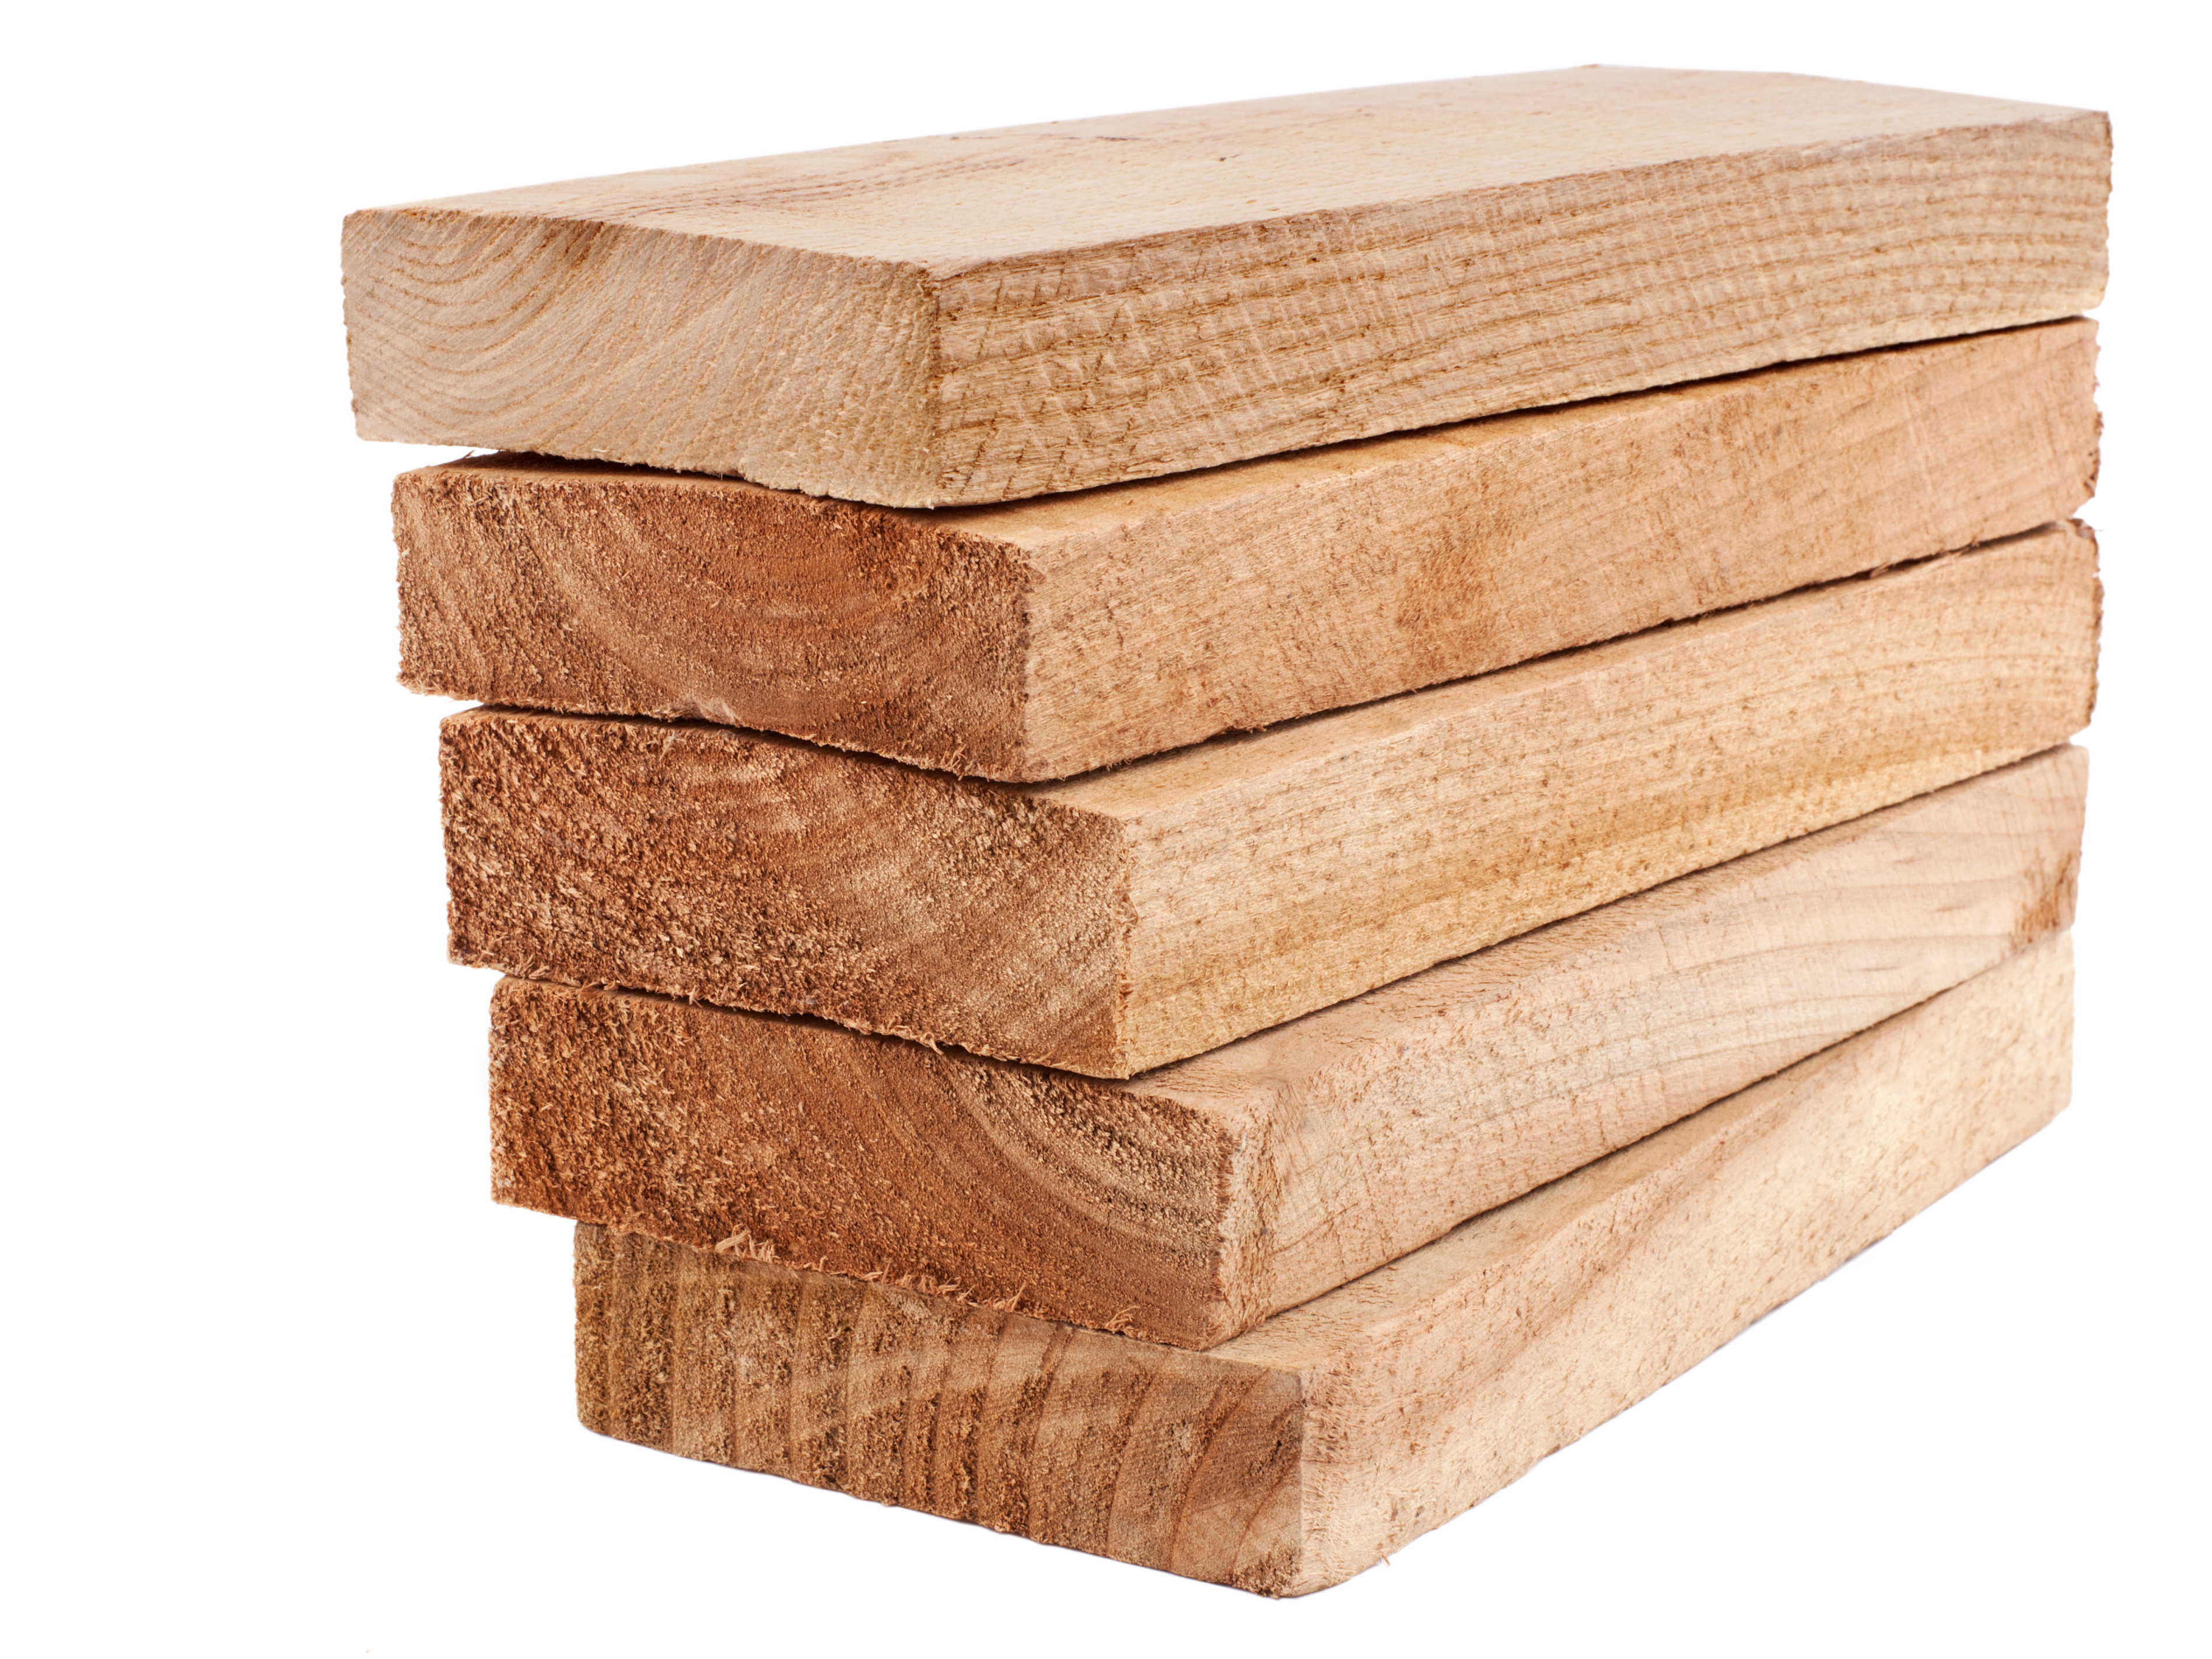 Lumber & Plywood